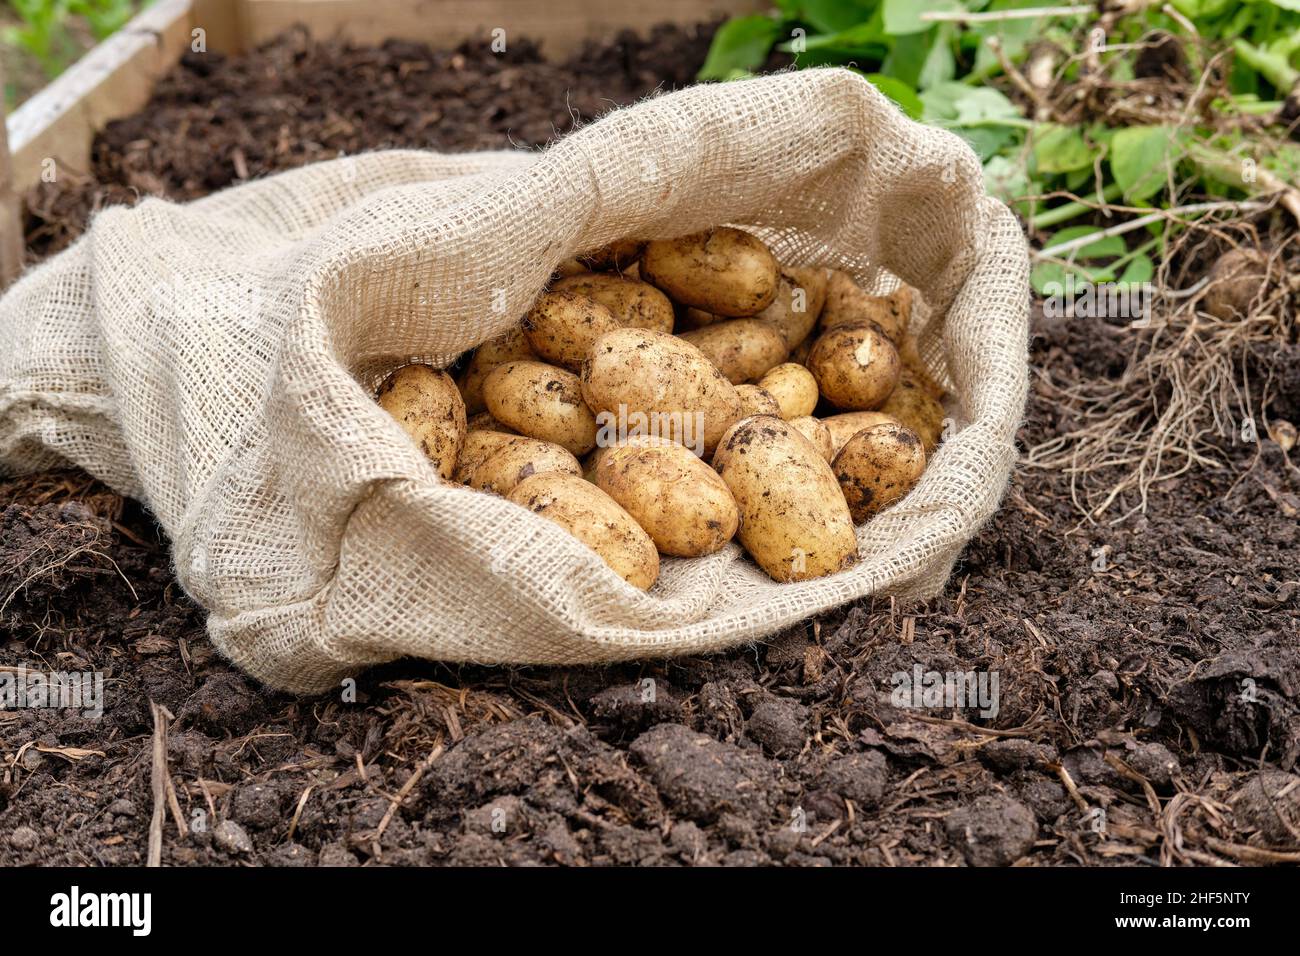 Un sacco di patate hessian riempito di patate novelle Charlotte appena sollevate da una materia organica ricca di terreno riempito in un giardino vegetale letto sollevato. Foto Stock